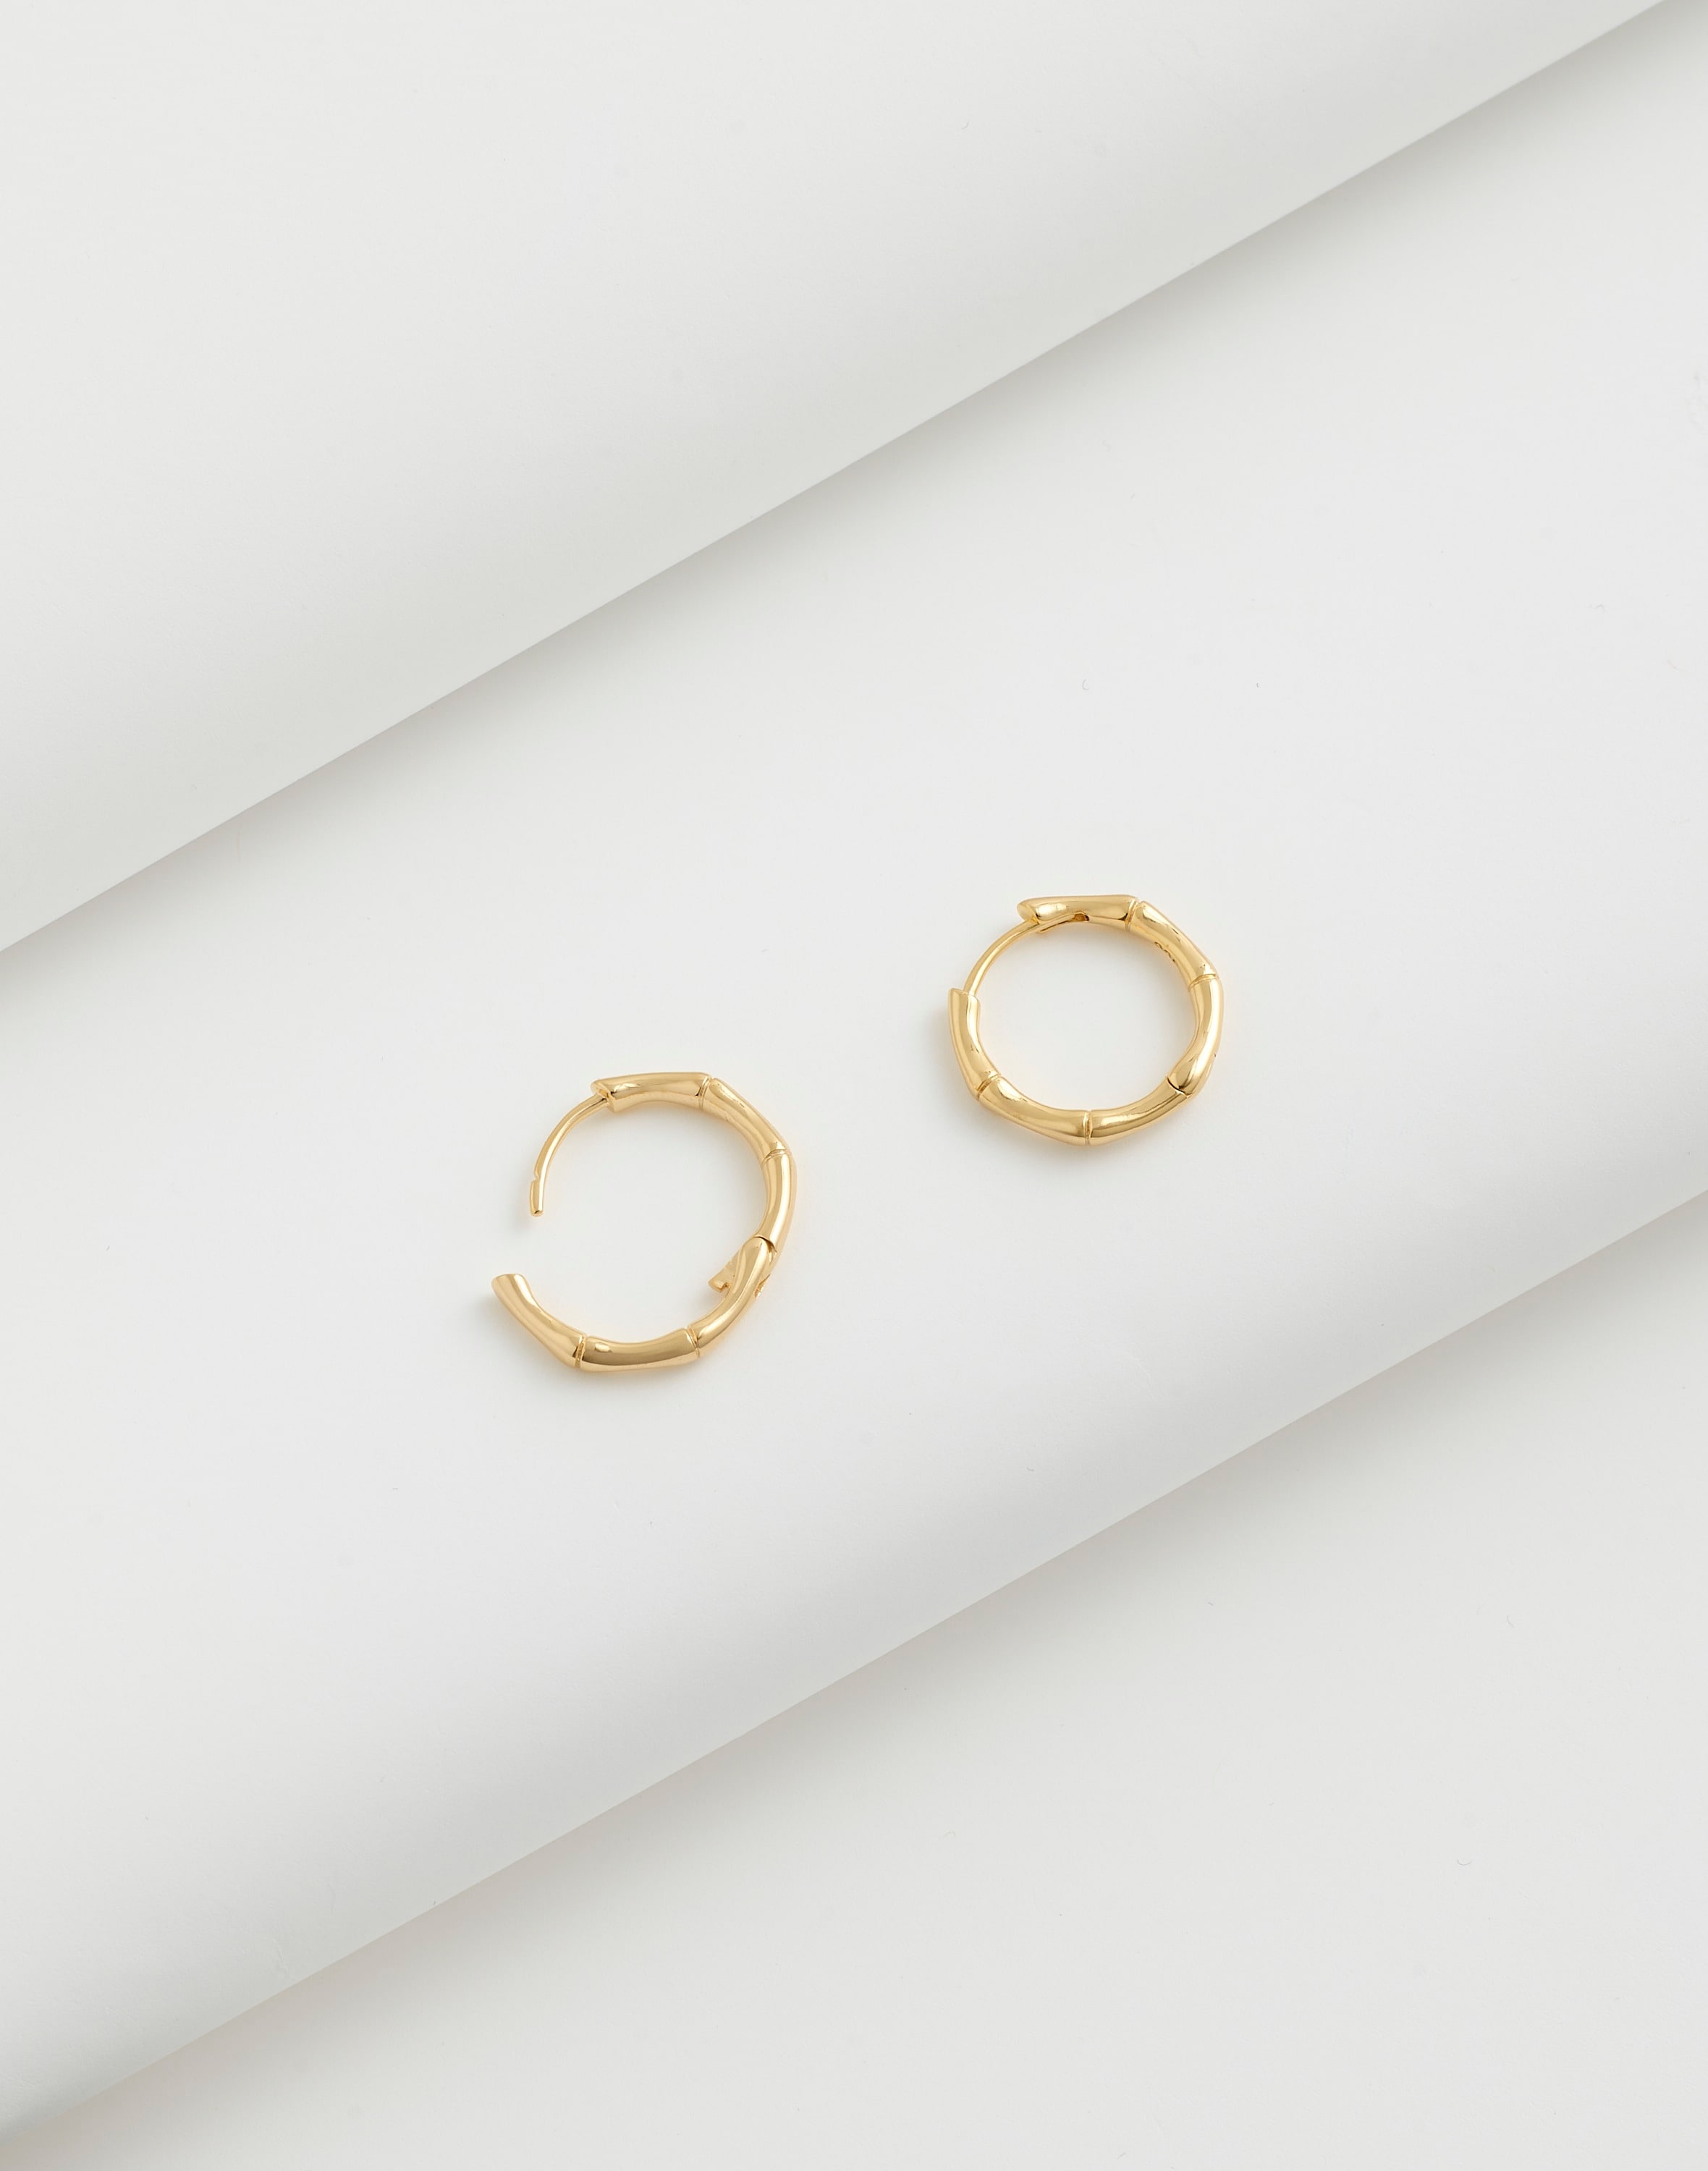 Mw Demi-fine Bamboo Small Hoop Earrings In 14k Gold